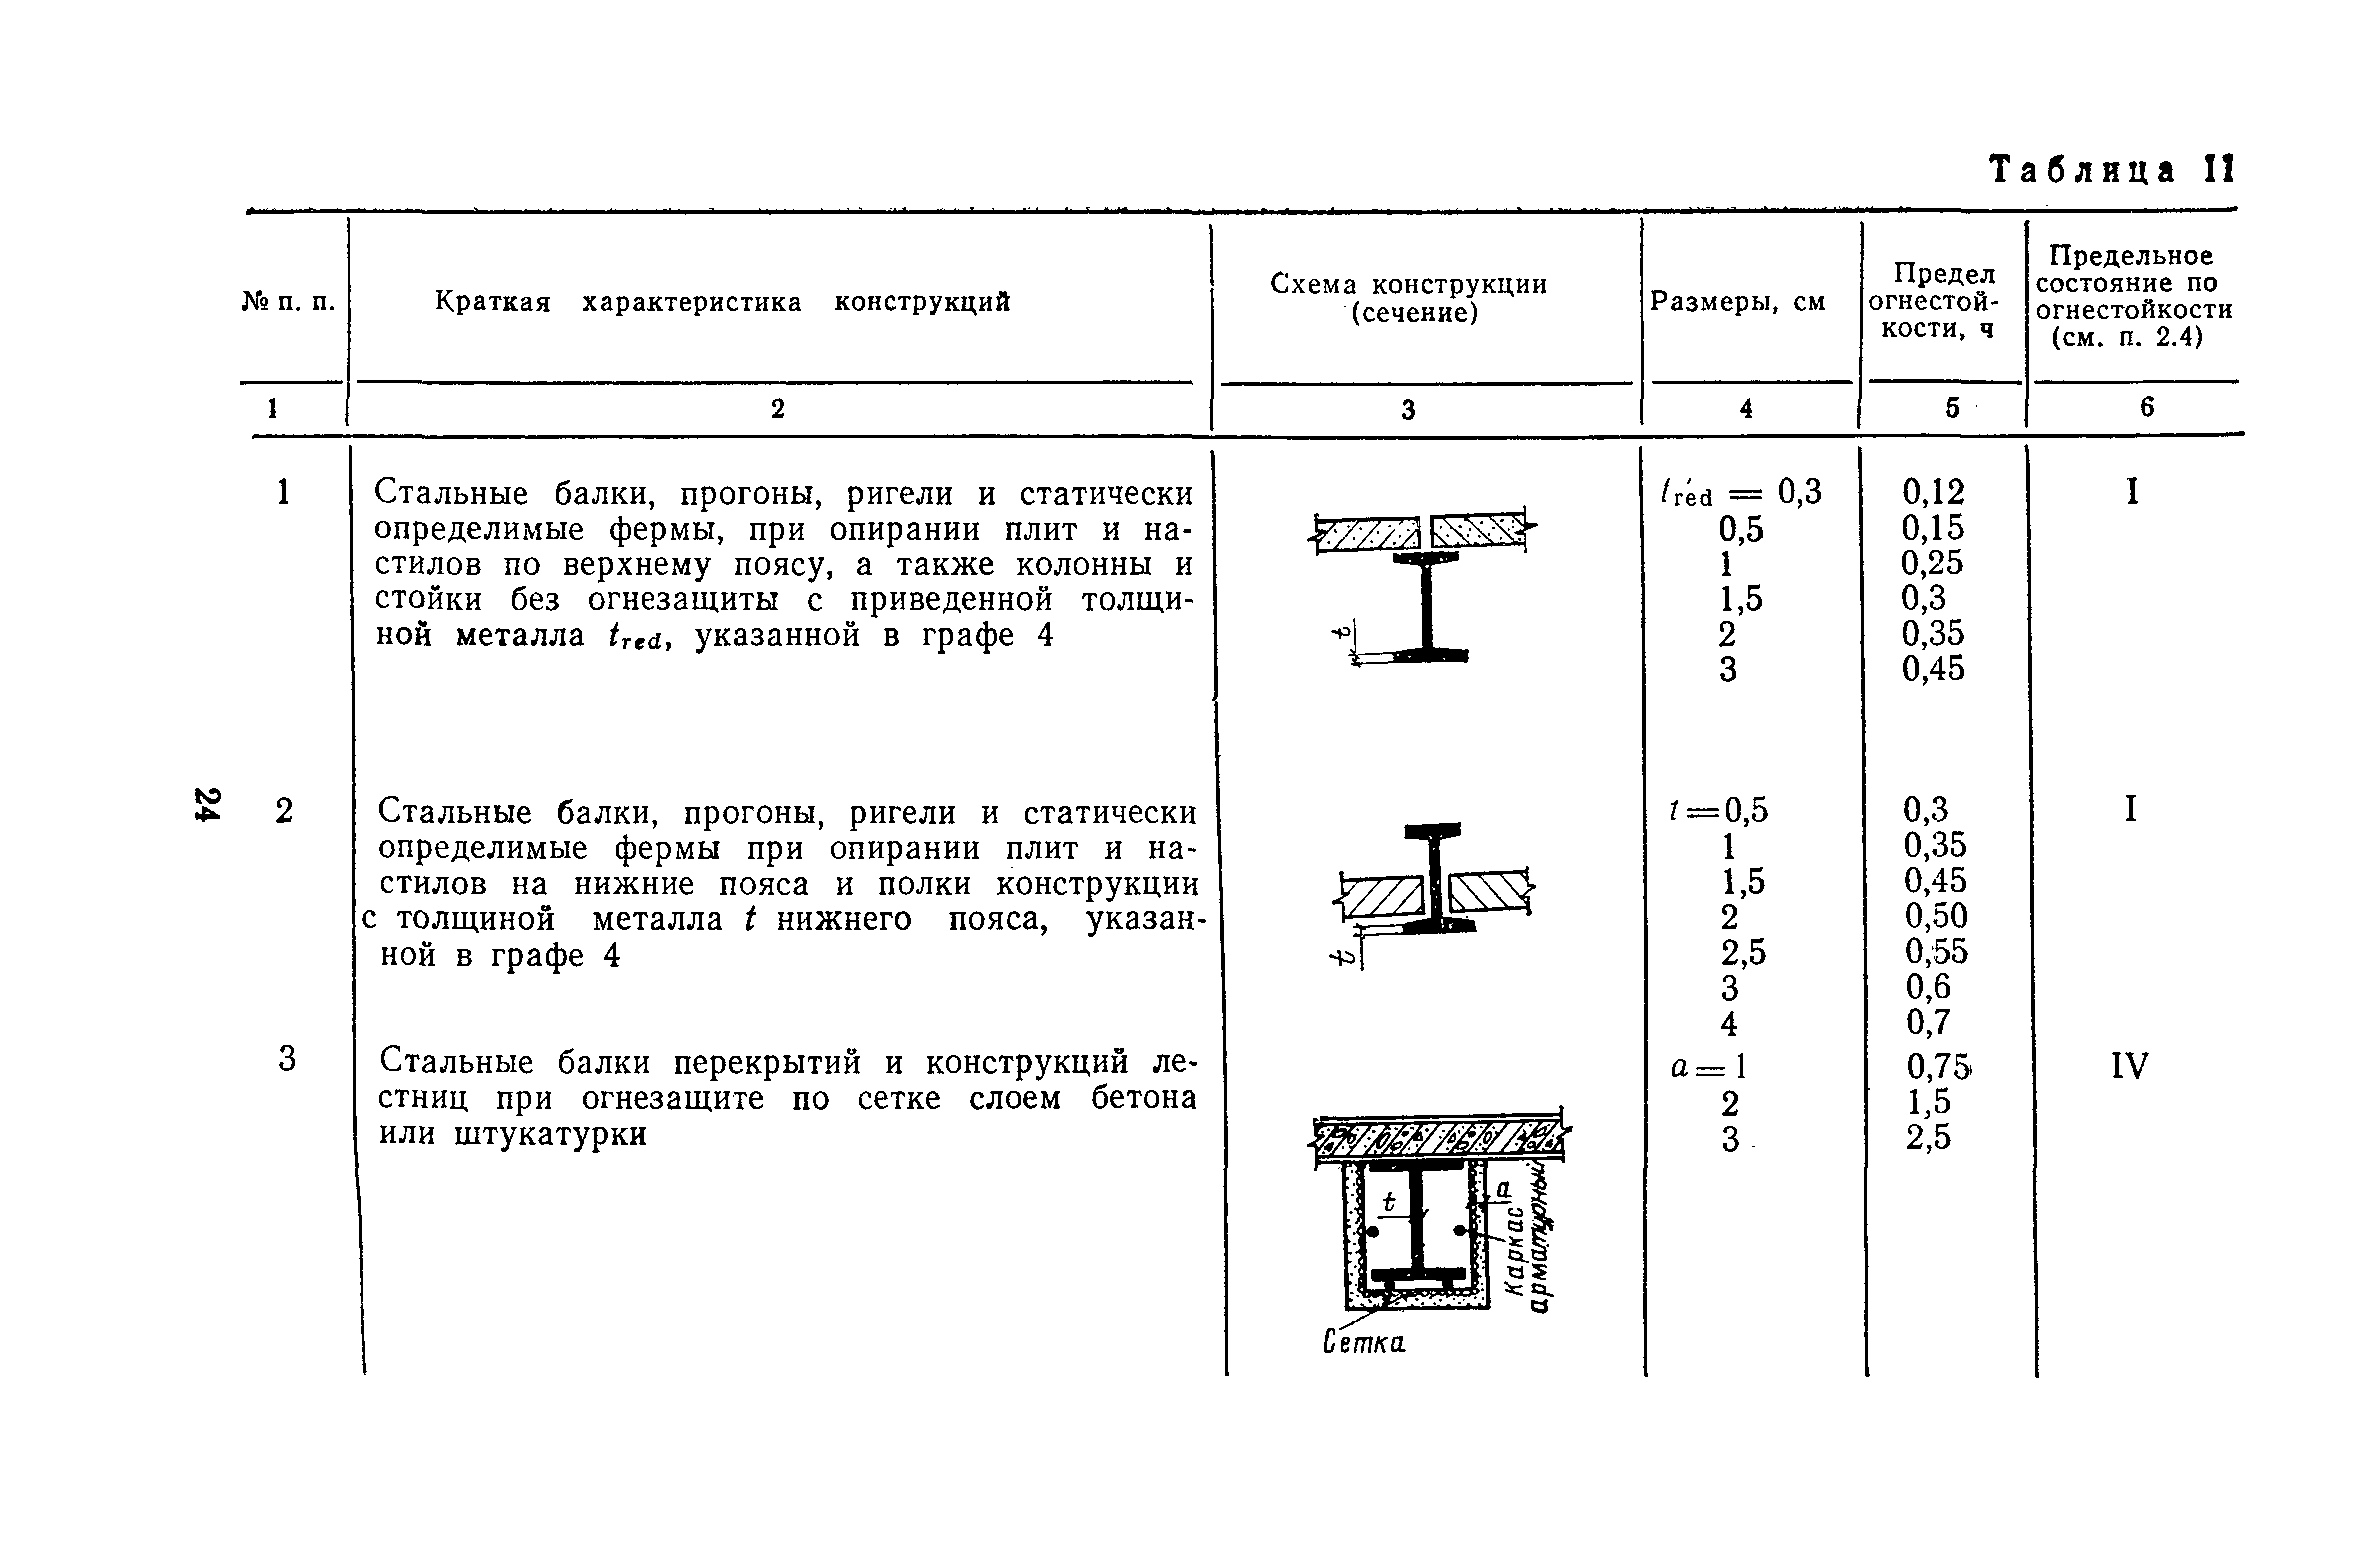 Предел огнестойкости металлоконструкций таблица